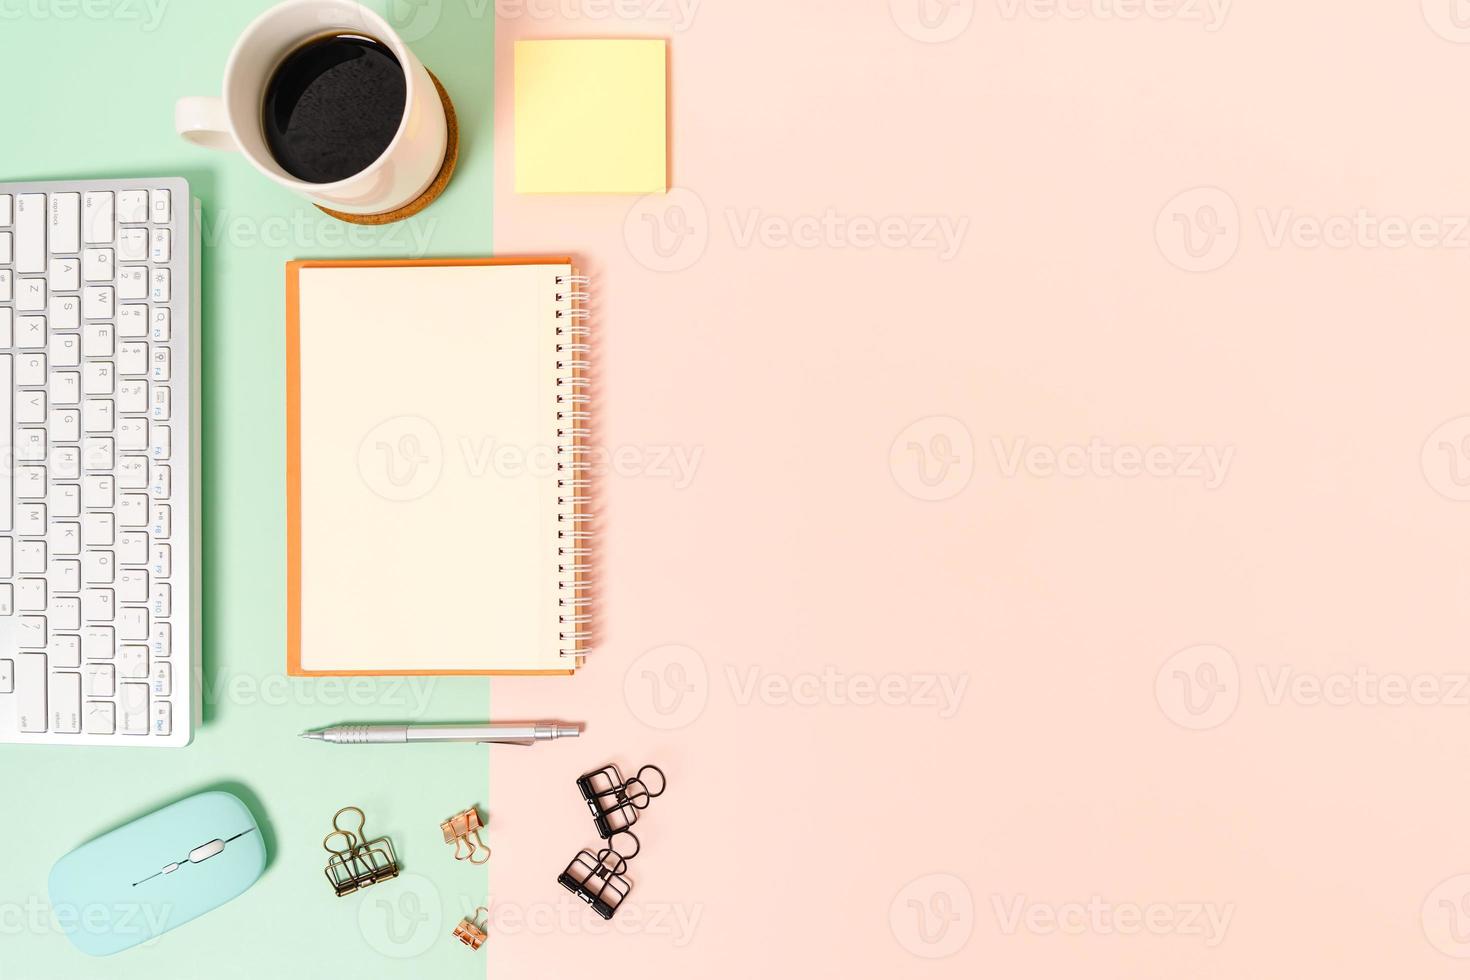 creatieve platliggende foto van een werkruimtebureau. bovenaanzicht bureau met toetsenbord, muis en open mockup zwarte notebook op pastel groen roze kleur achtergrond. bovenaanzicht mock-up met kopieerruimtefotografie.